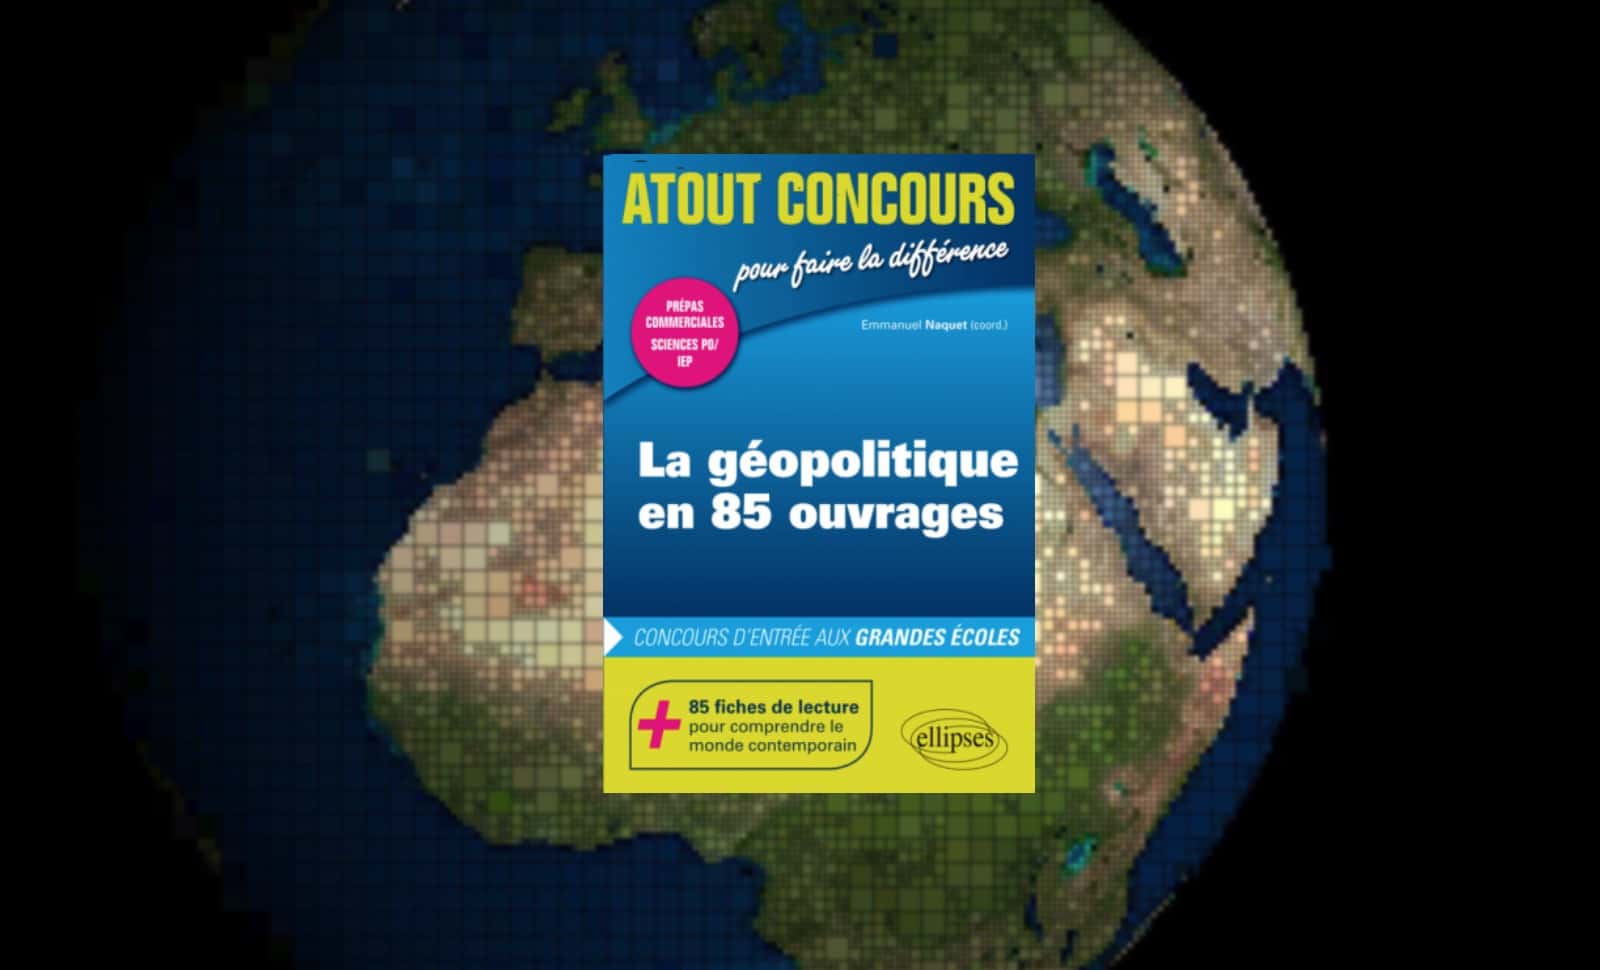 "La Géopolitique en 85 ouvrages", sous la coordination d’Emmanuel Naquet
Ellipses, 2019, 318 pages